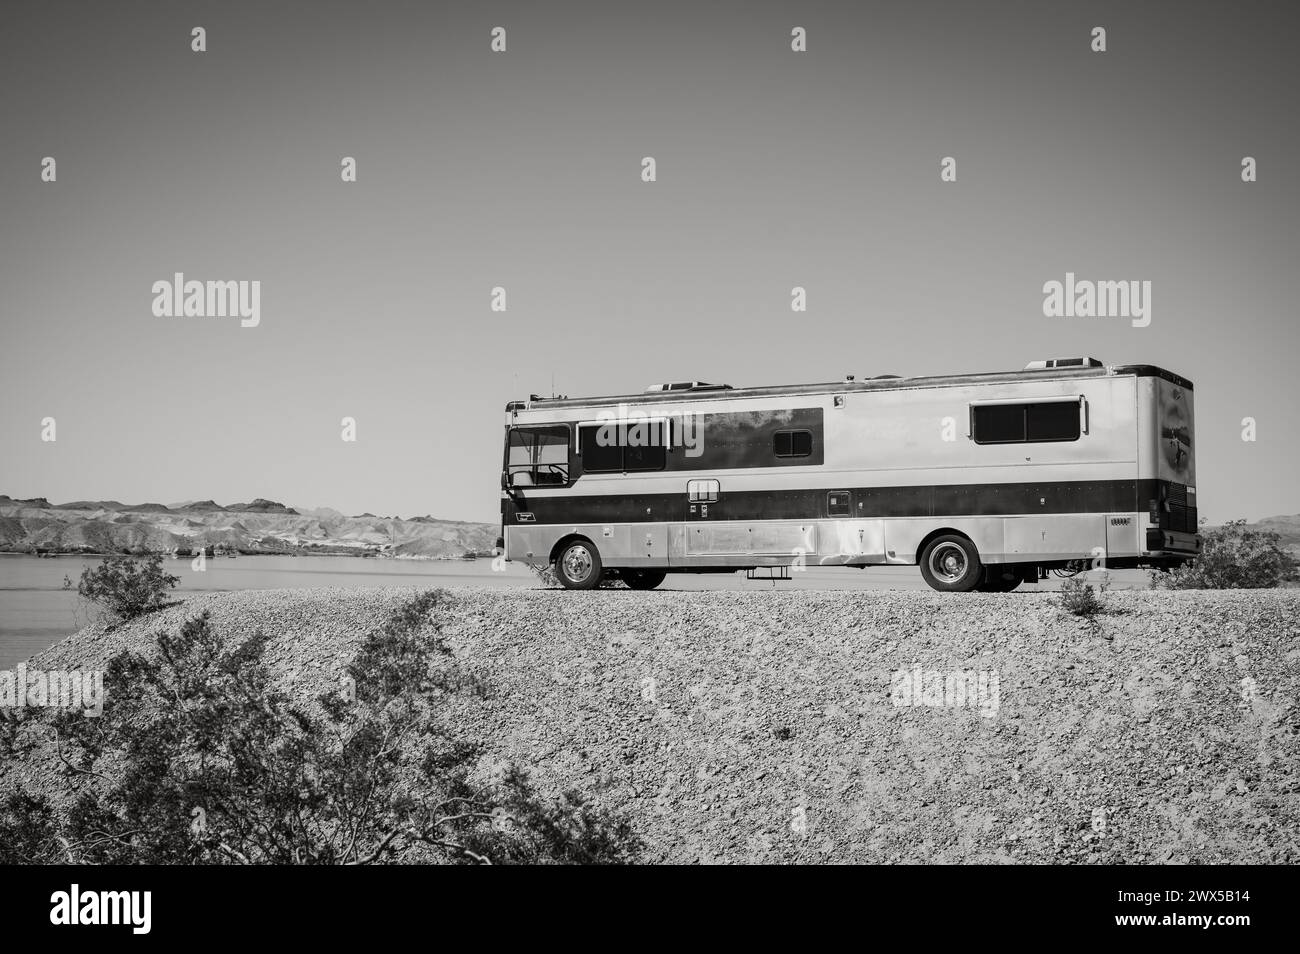 Un grande camper in stile autobus parcheggiato sulle rive del Lago Havasu. Lake Havasu City, Stati Uniti. Immagine in bianco e nero. Foto Stock